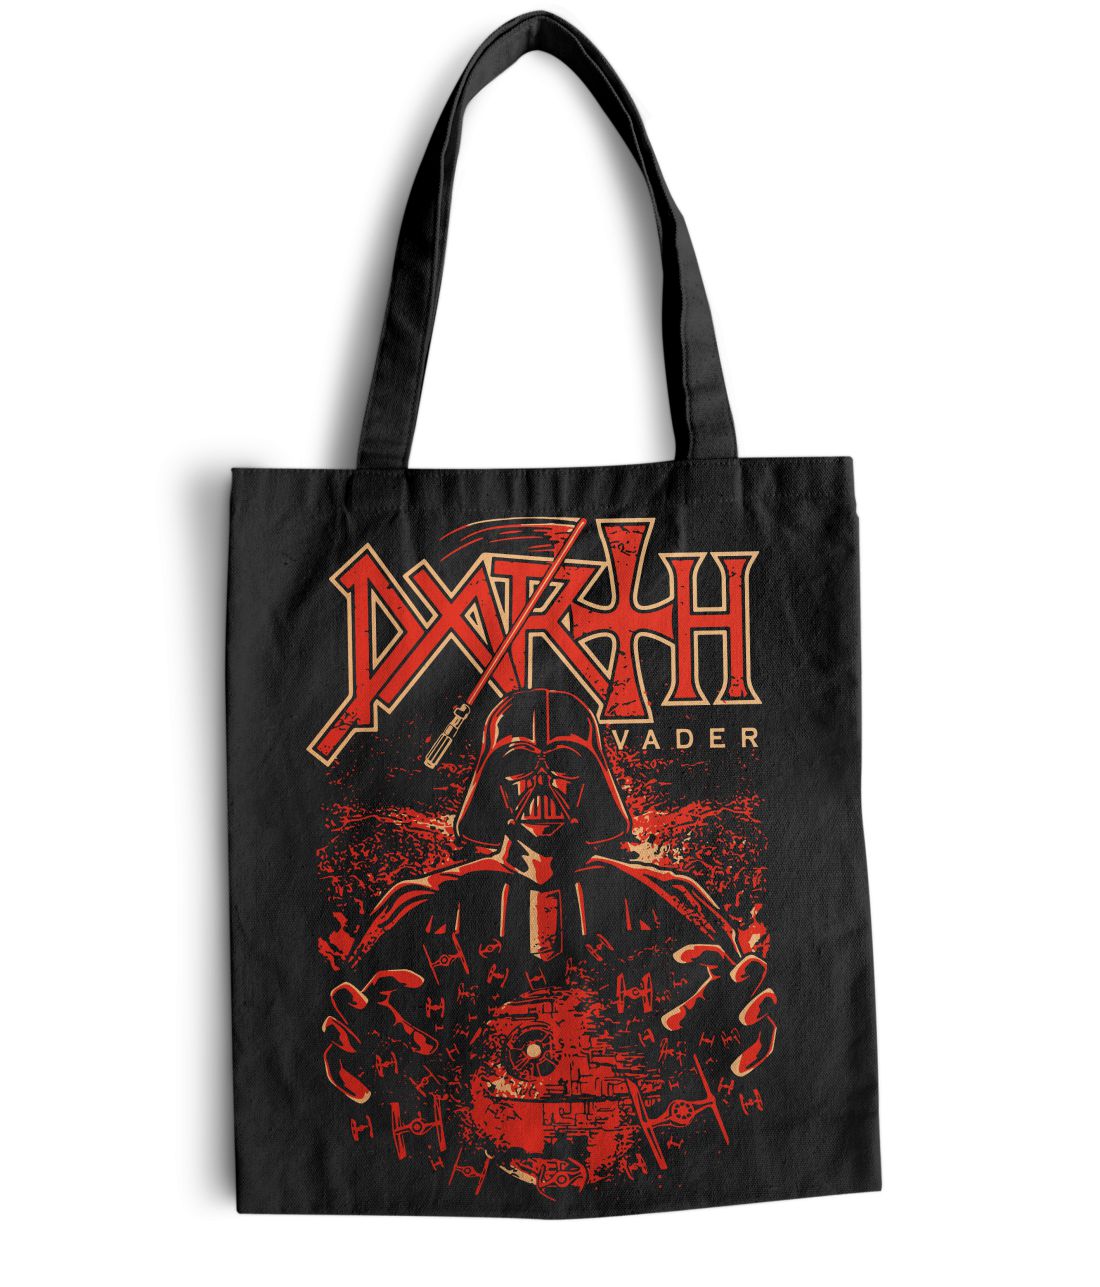 Darth Vader metal series